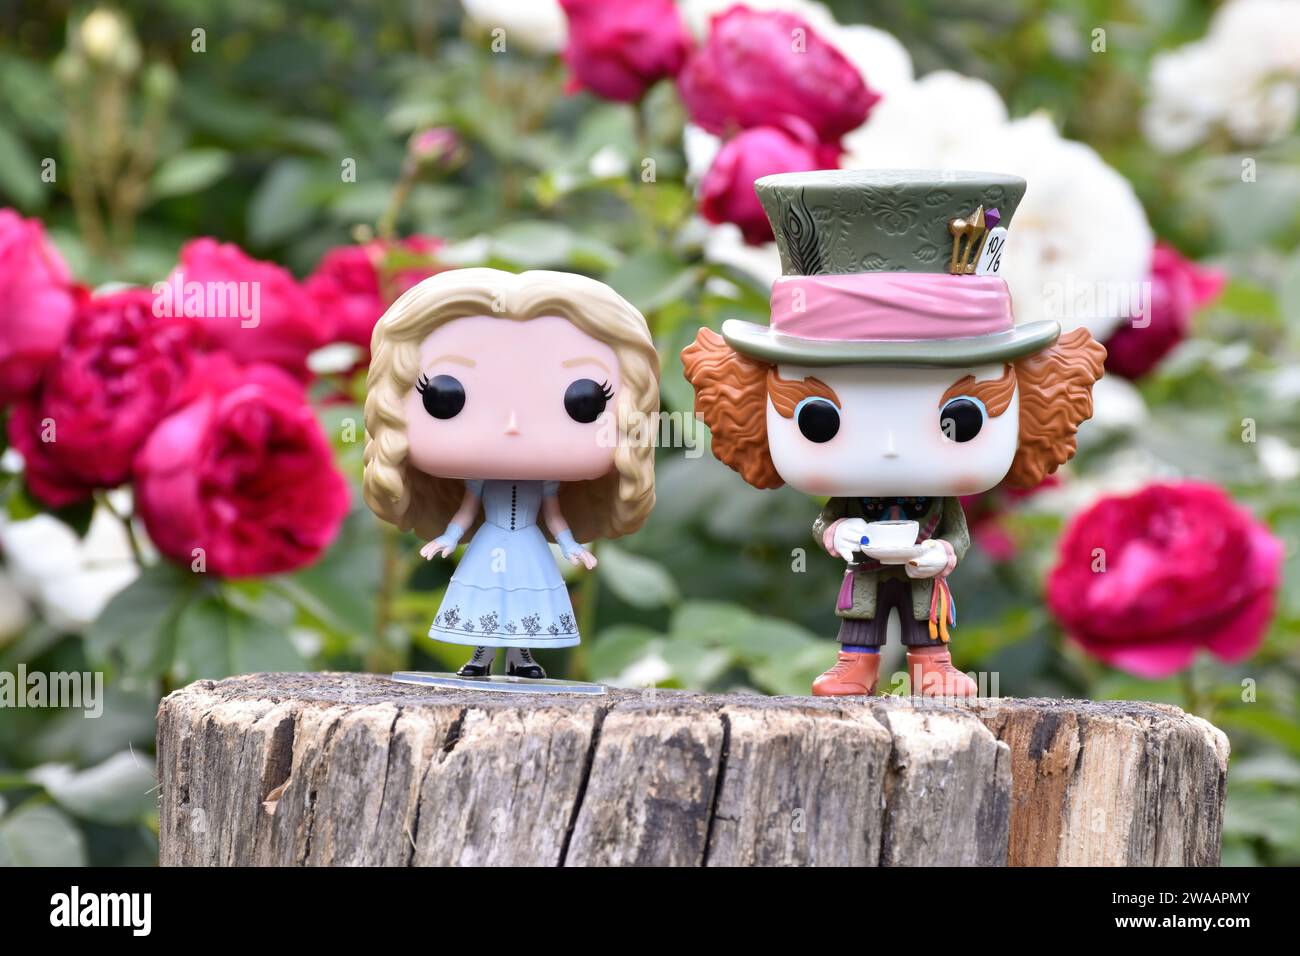 Funko Pop action figure di Mad Hatter e Alice nel Paese delle meraviglie dal popolare film fantasy Tim Burton. Rose rosse e bianche, giardino, ceppo di legno. Foto Stock